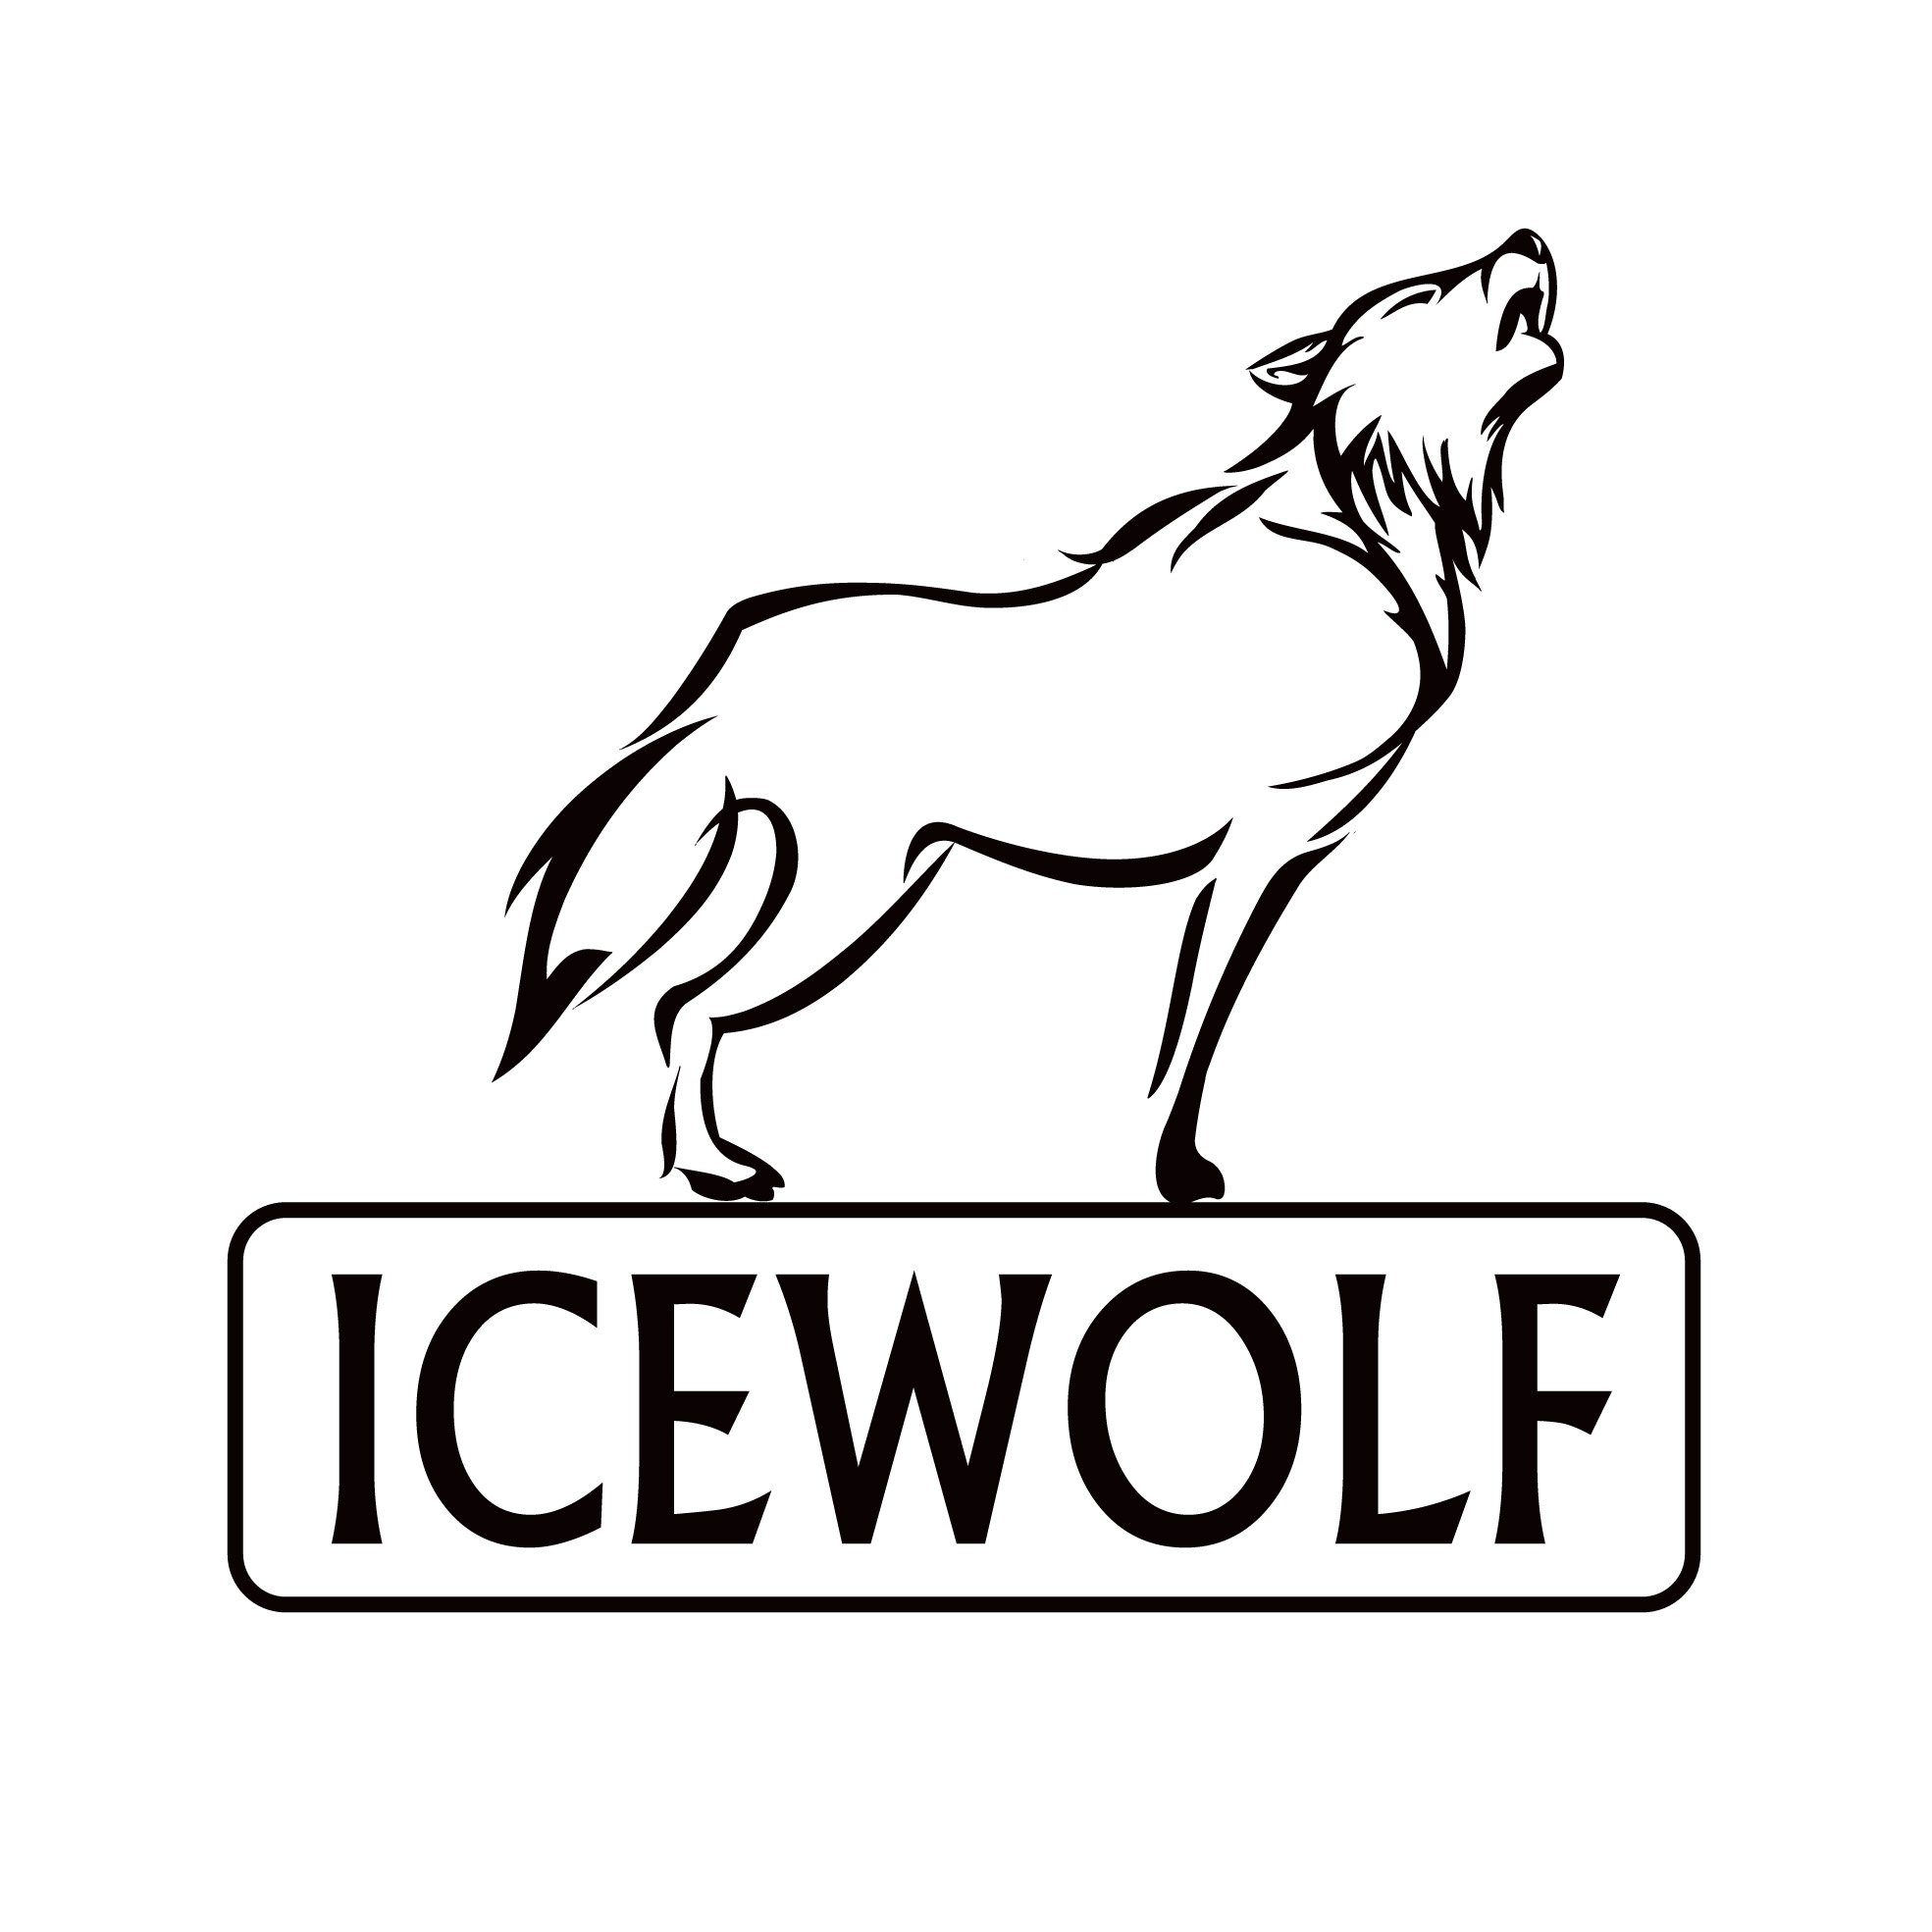 IceWolf